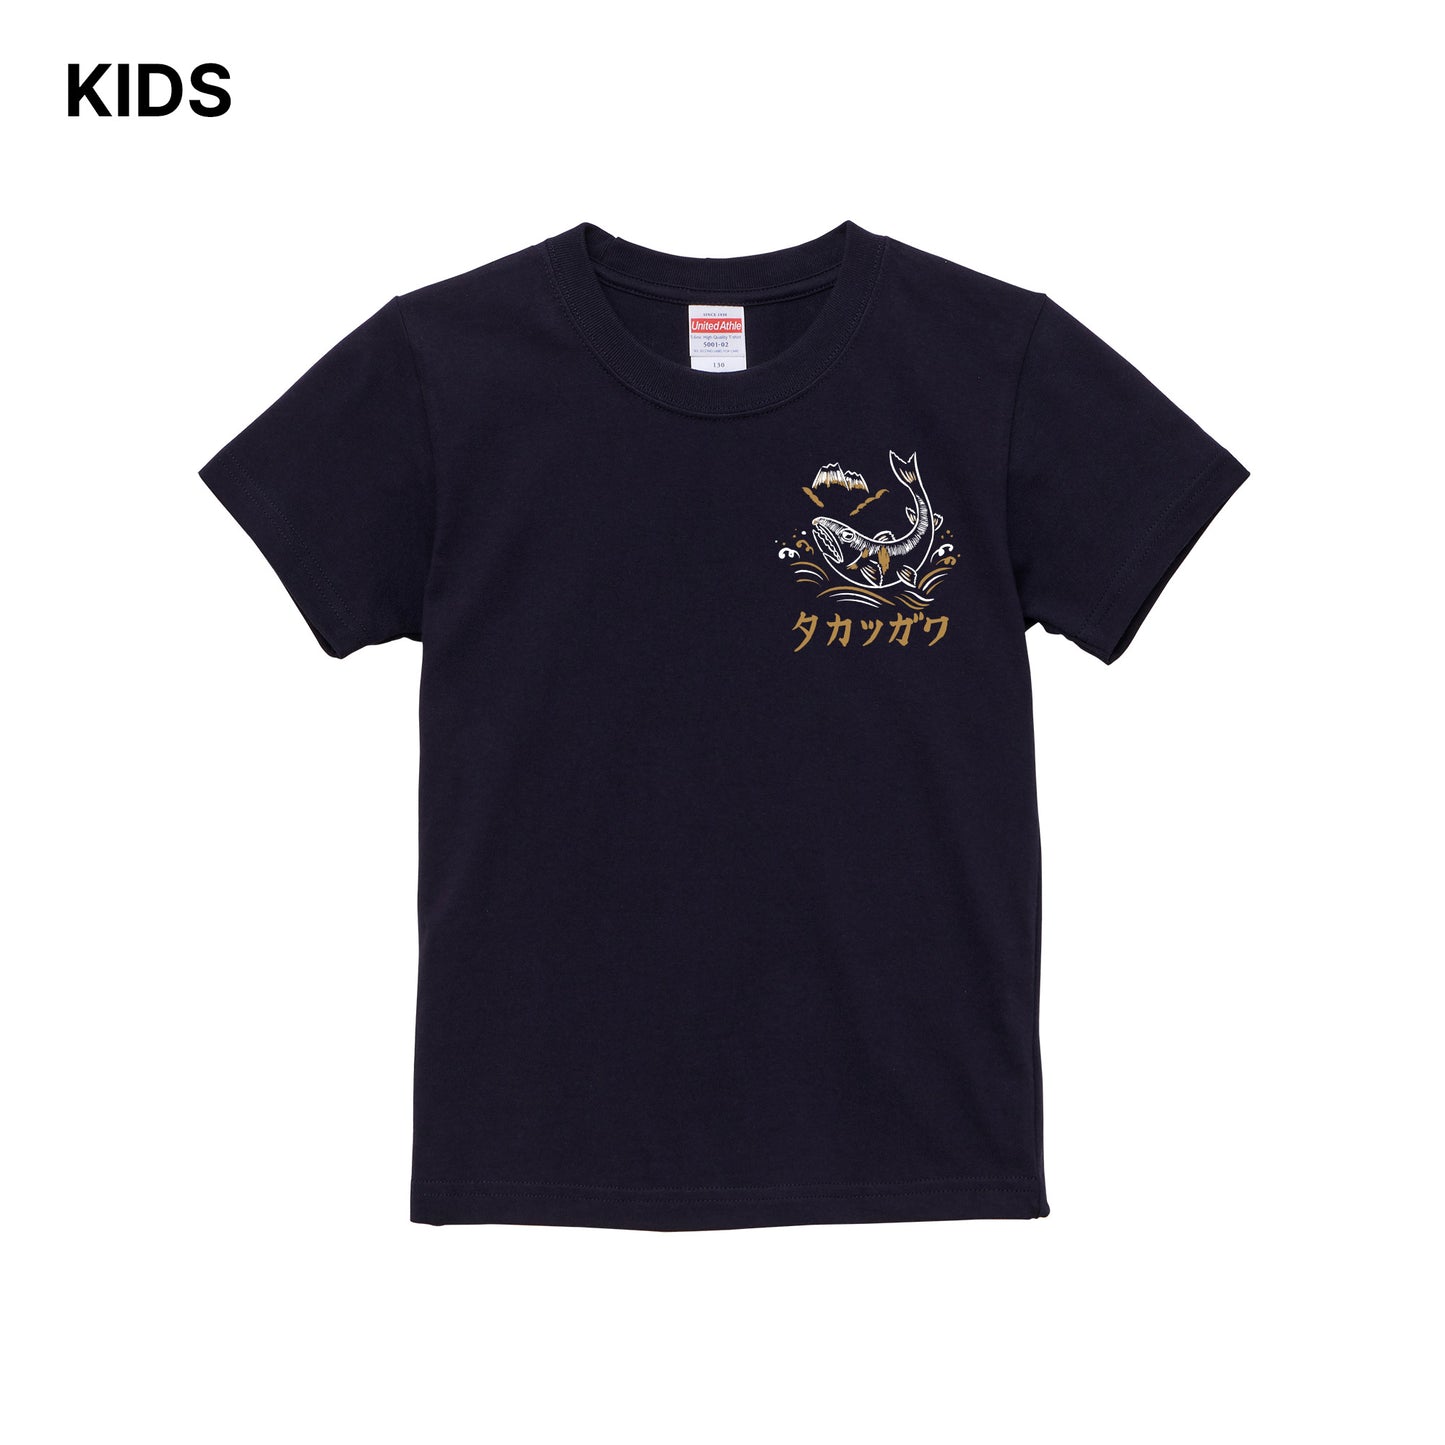 鮎と高津川 KIDS Tシャツ | Masuda Sukajan Graphics【納期2週間】